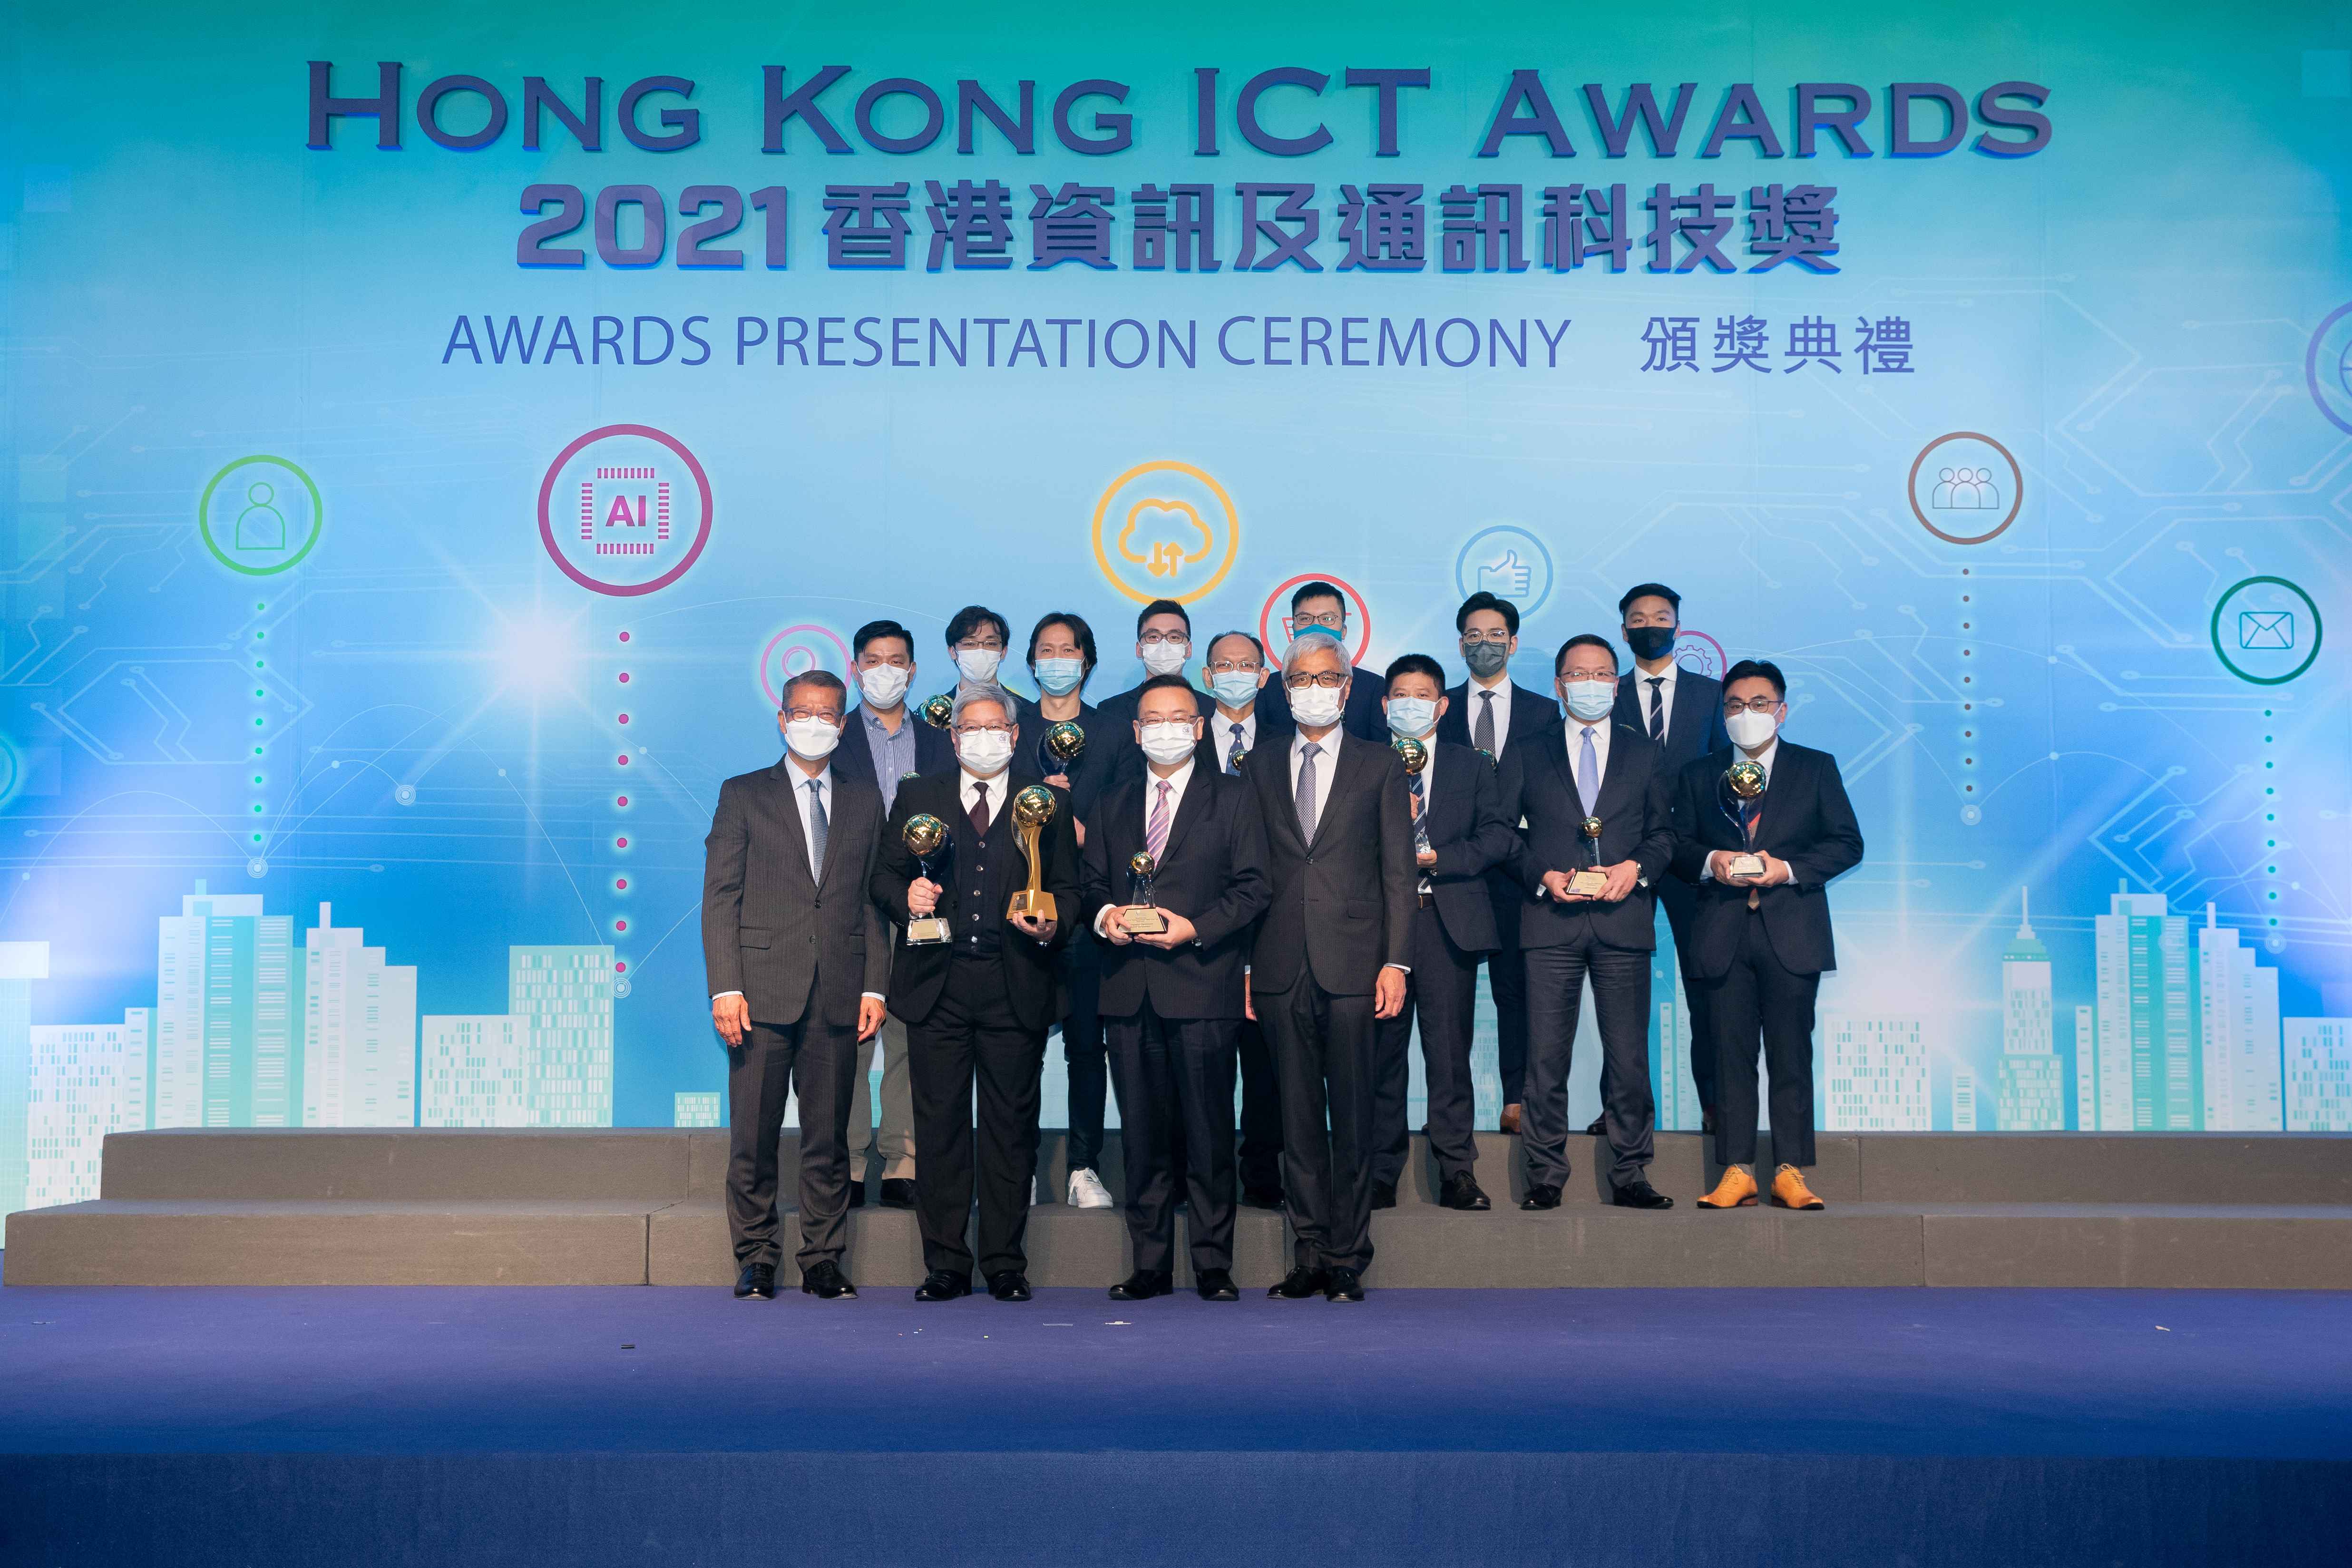 Hong Kong ICT Awards 2021 Award of the Year Winner